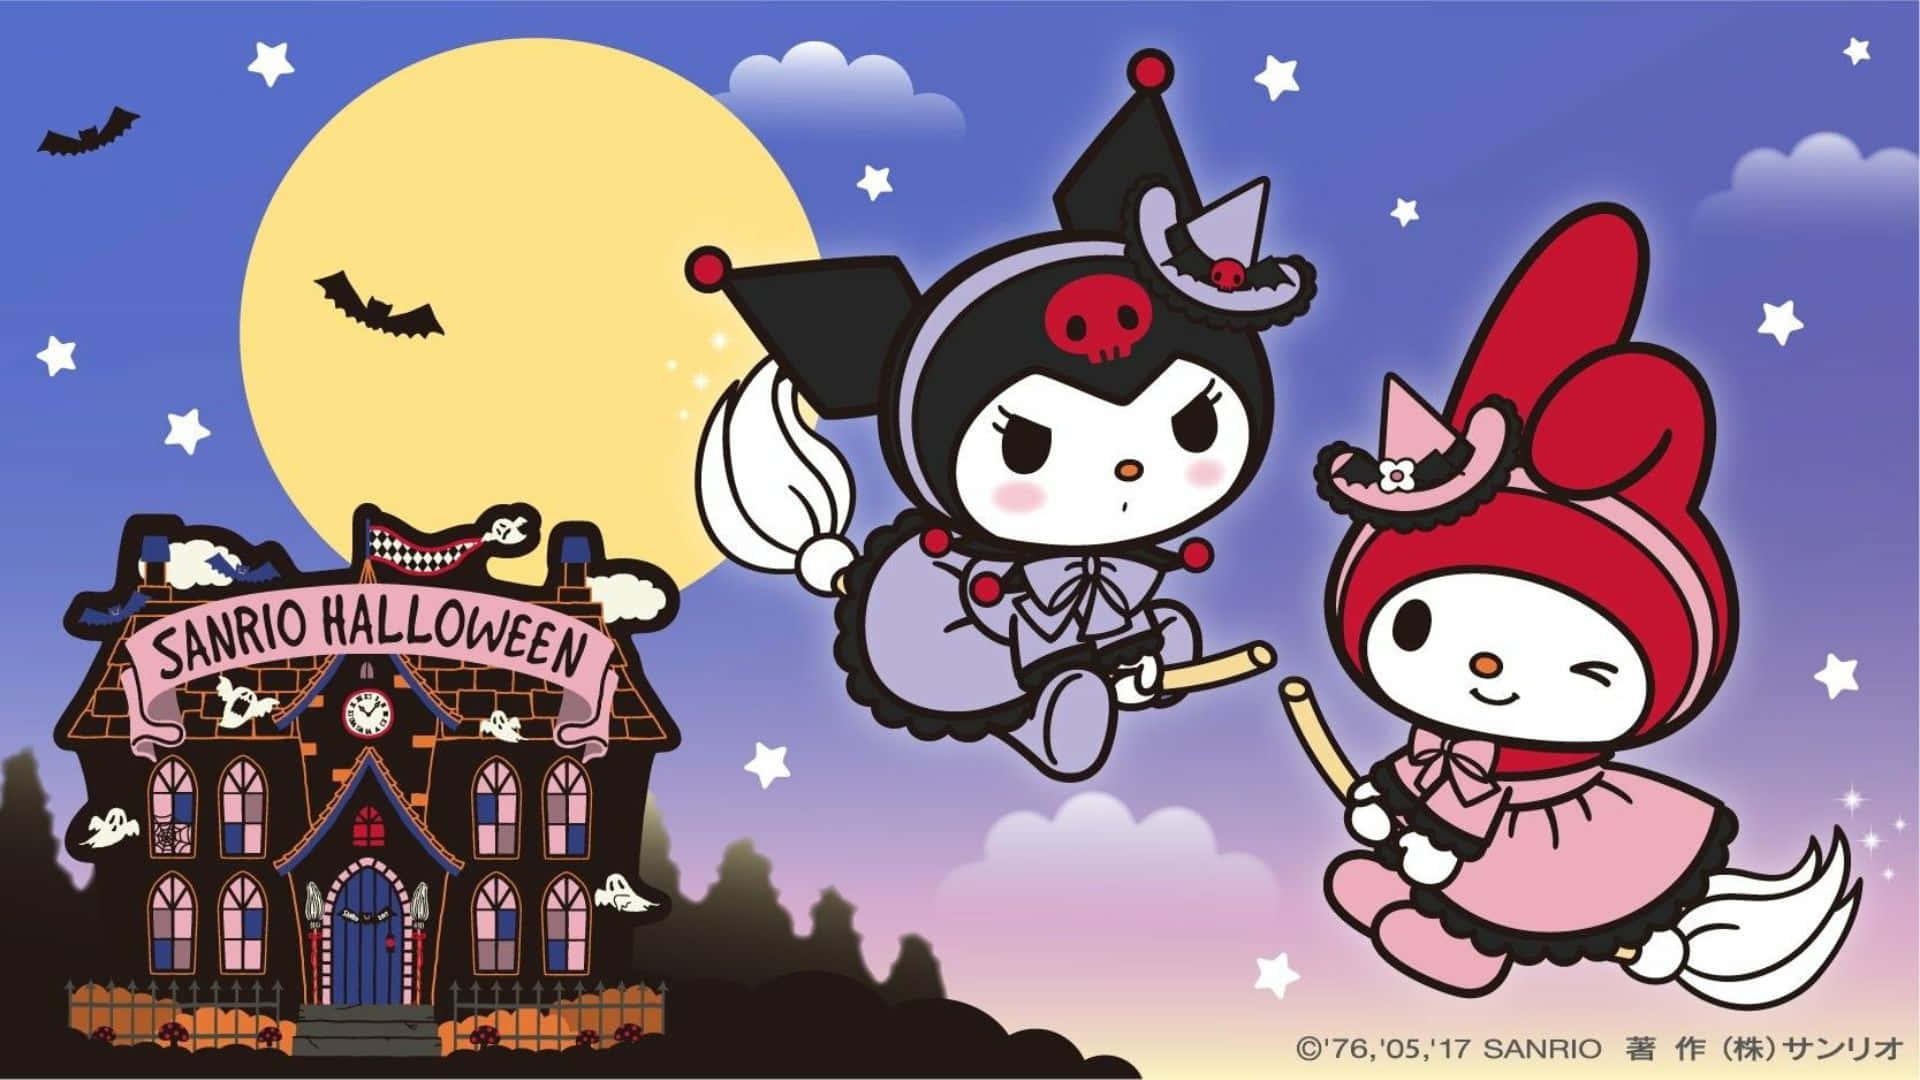 Kuromi in a Spooky Halloween Costume Wallpaper